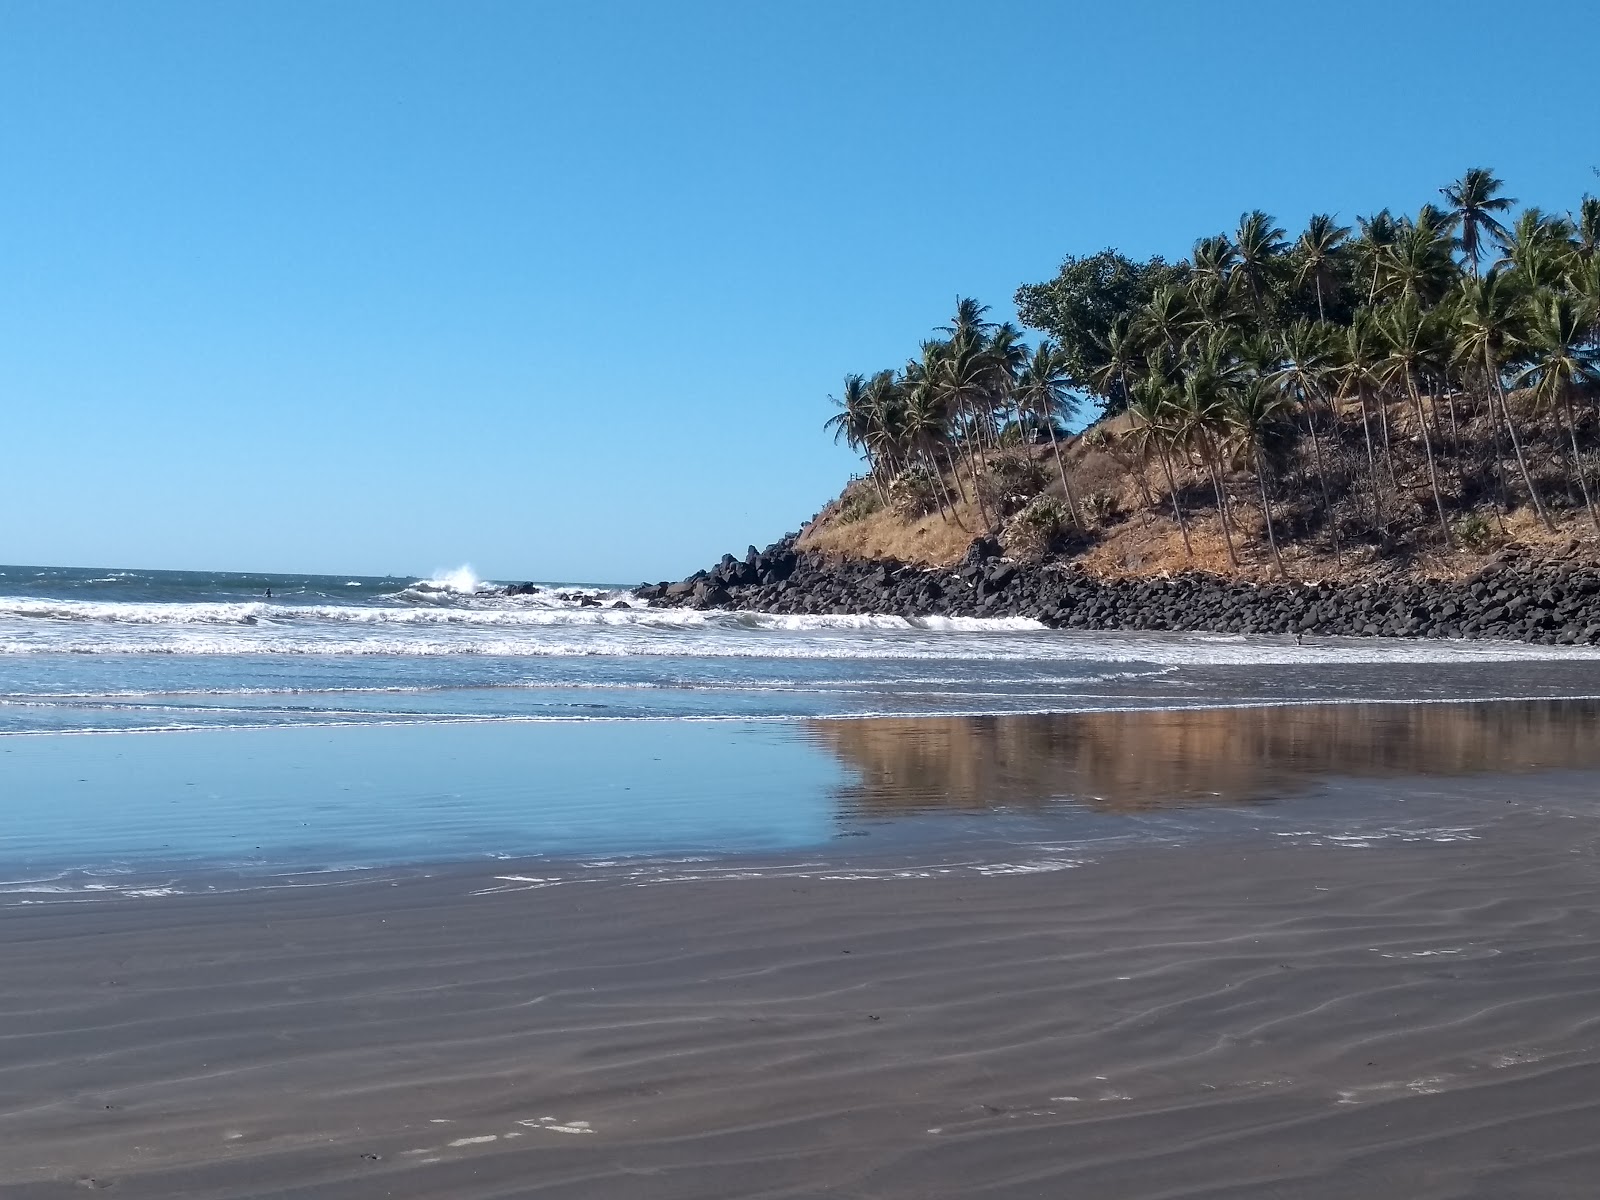 Foto af Playa El Cuco - populært sted blandt afslapningskendere